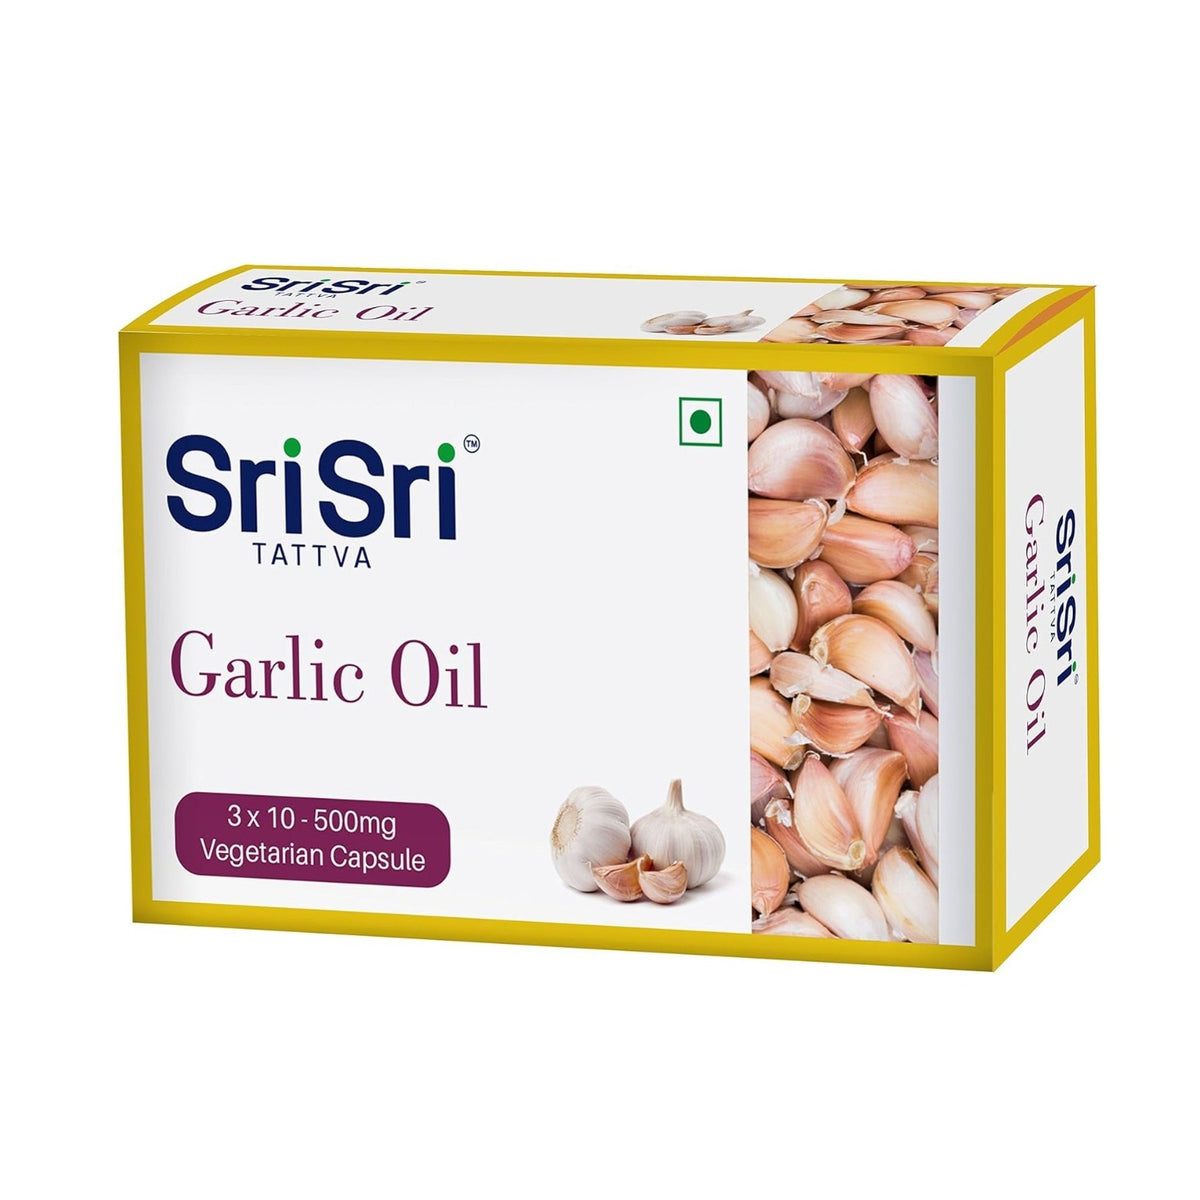 Sri Sri Tattva Ayurvedic Garlic Oil Capsules 500mg Vegetarian 30 Capsule